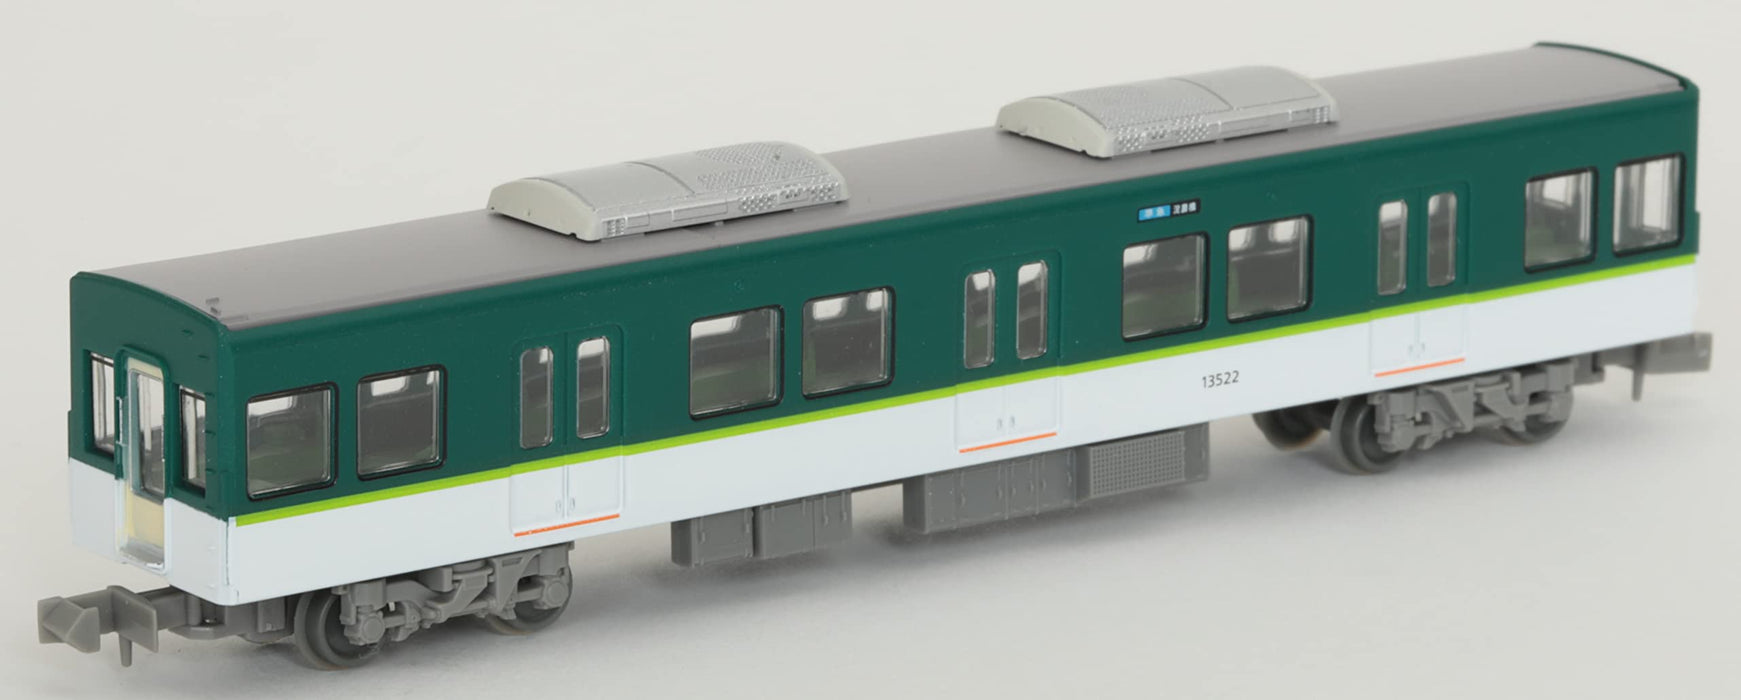 Tomytec Japan Railway Collection Keihan Electric Railway Serie 13000 7-Wagen-Set Dioramazubehör (1. Bestellung, limitierte Auflage) 318309